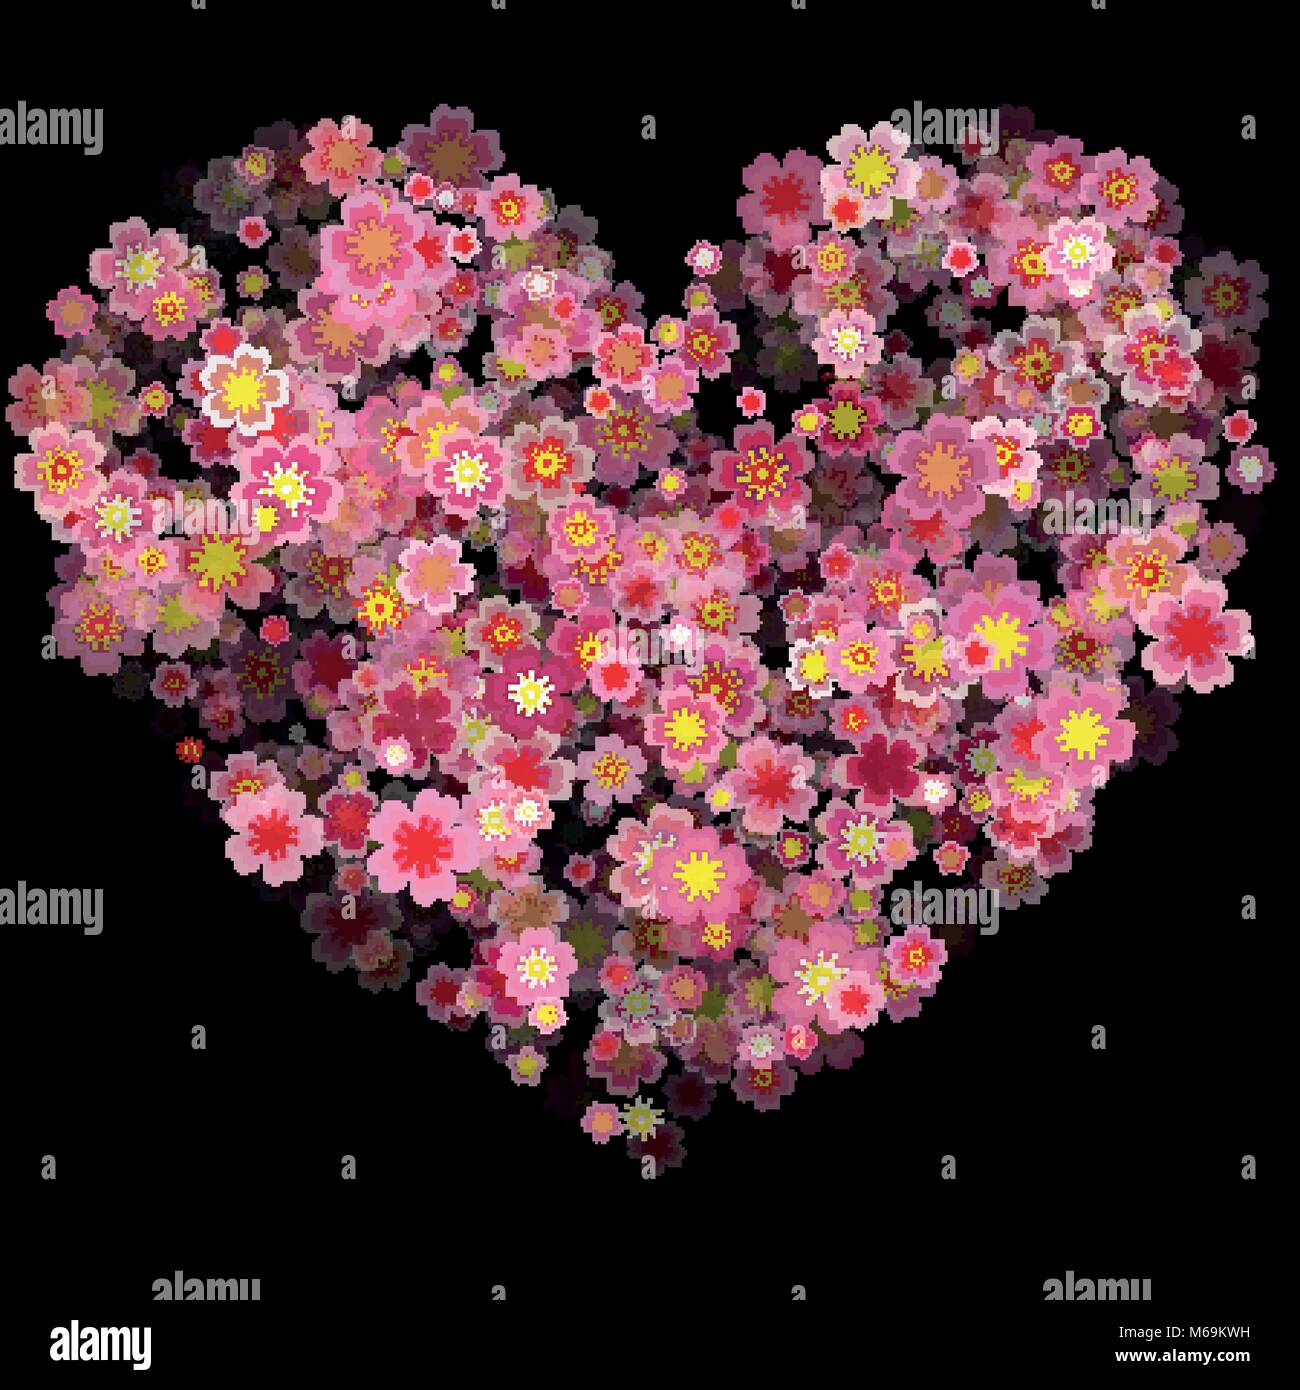 Saint Valentin Coeur en fleurs de cerisier isolé sur fond noir. Vector Illustration d'un Happy Valentines Day Design, cœur de fleurs Illustration de Vecteur